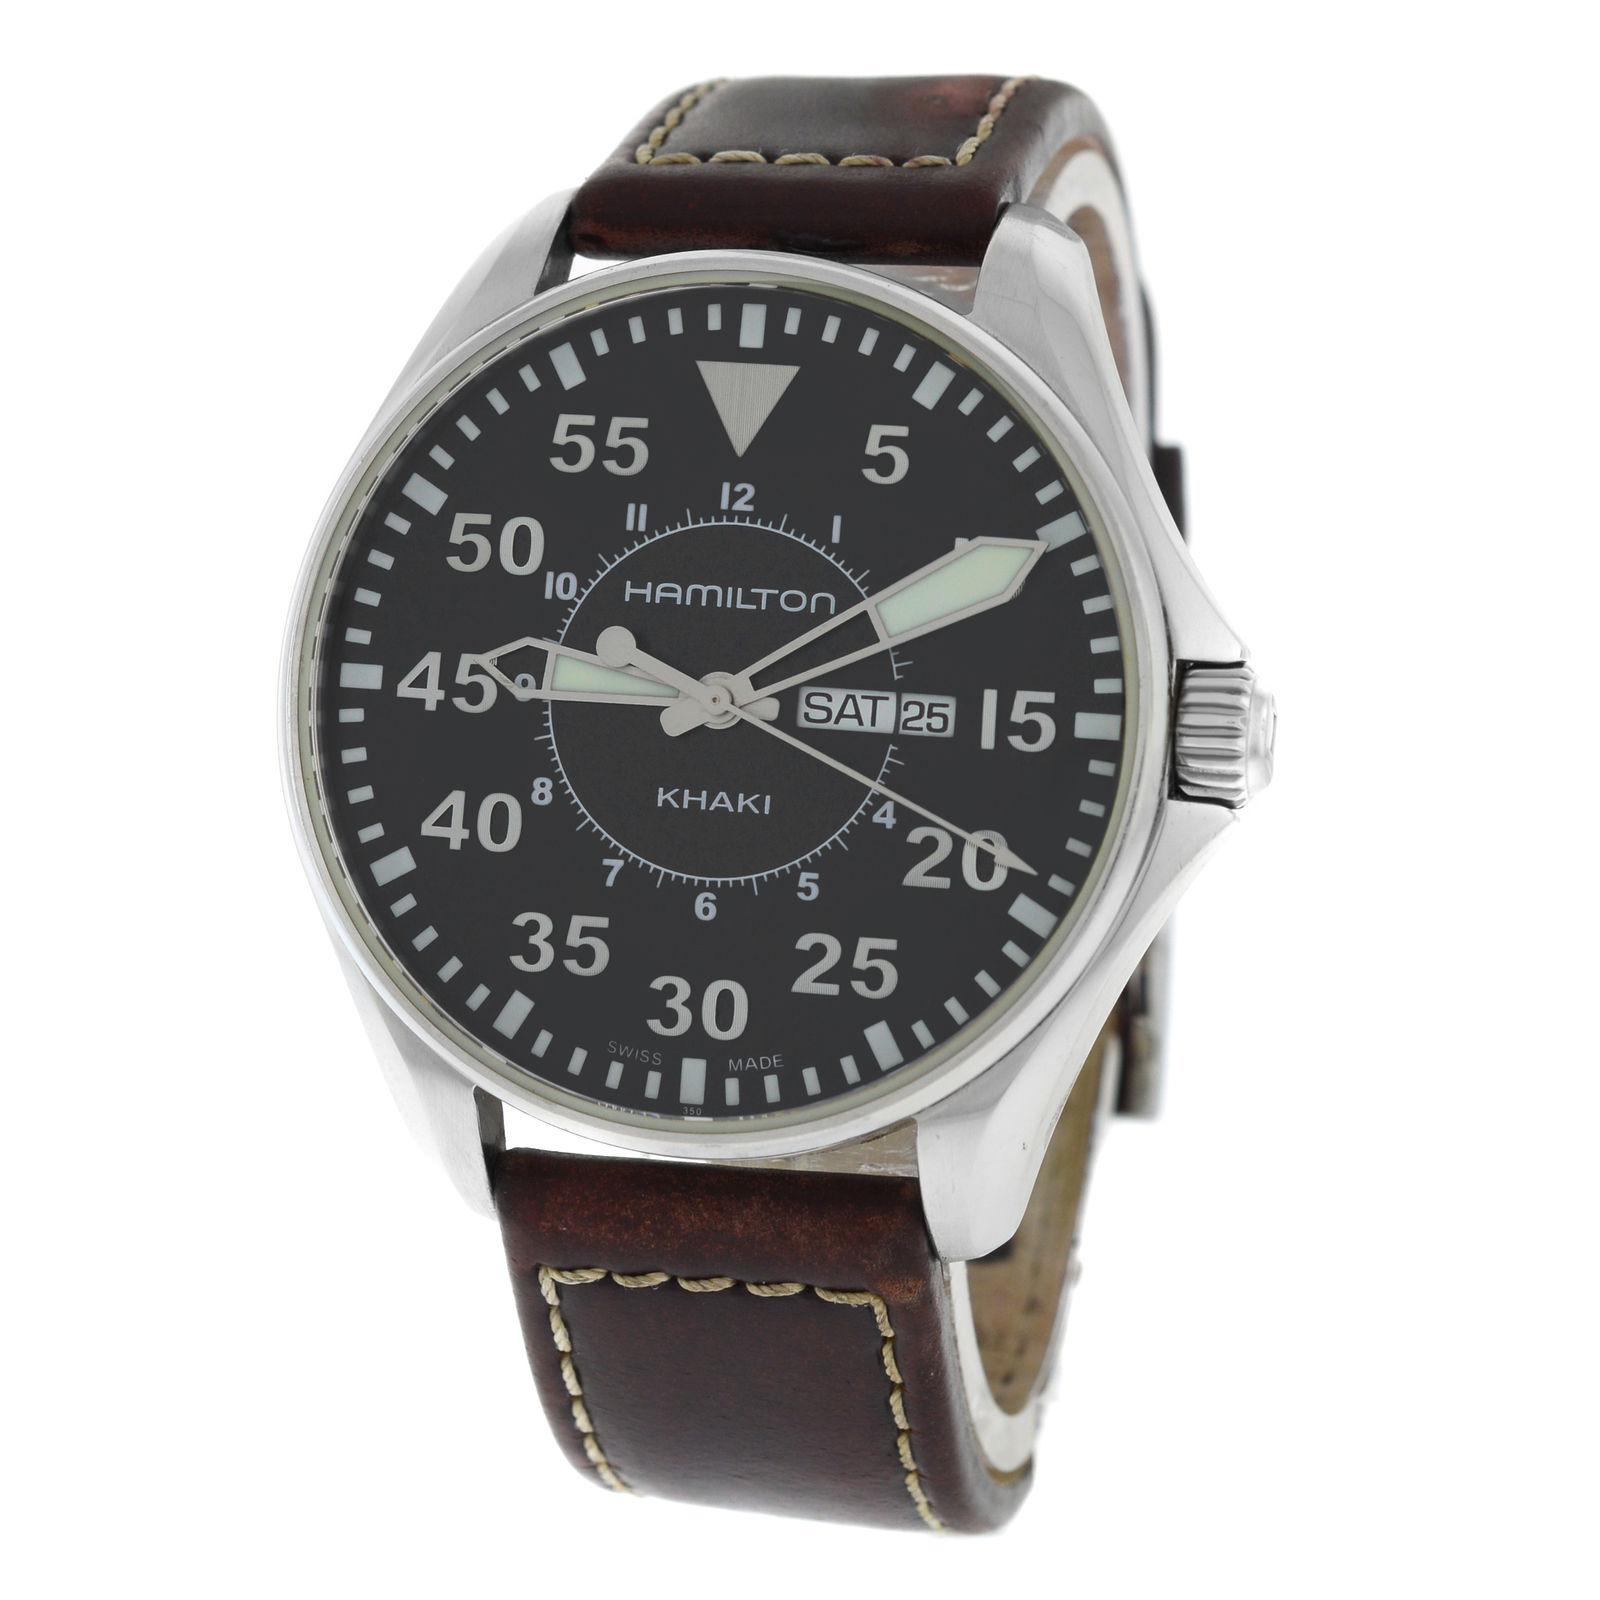 Authentic Men's Hamilton Khaki Aviation Pilot H646110 Quartz Watch